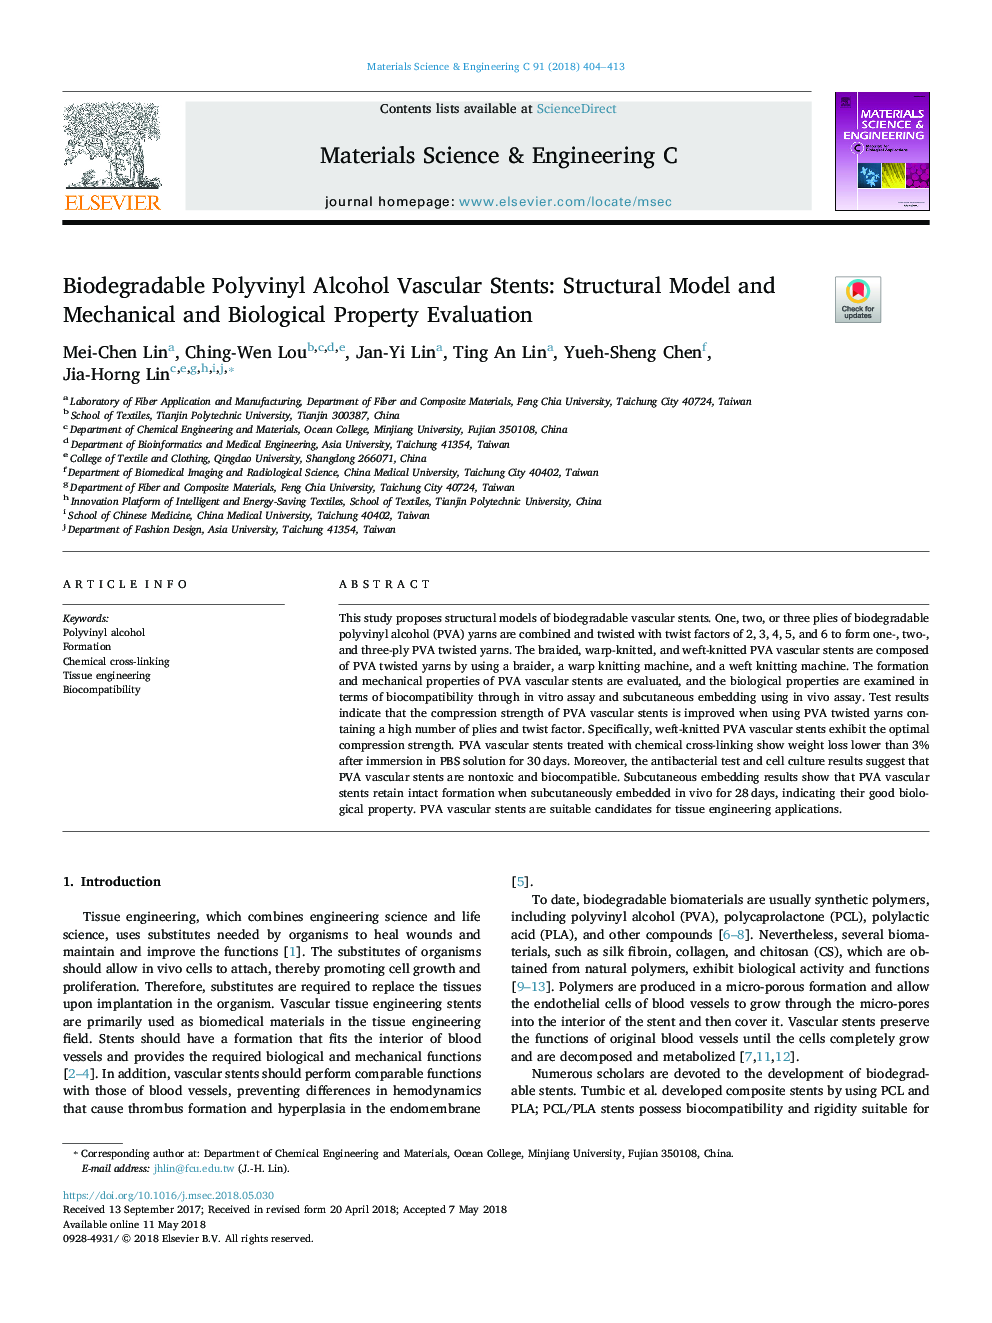 استنت های عضلانی پلی وینیل الکل زیستی قابل تجزیه: مدل ساختاری و ارزیابی اموال مکانیکی و بیولوژیکی 